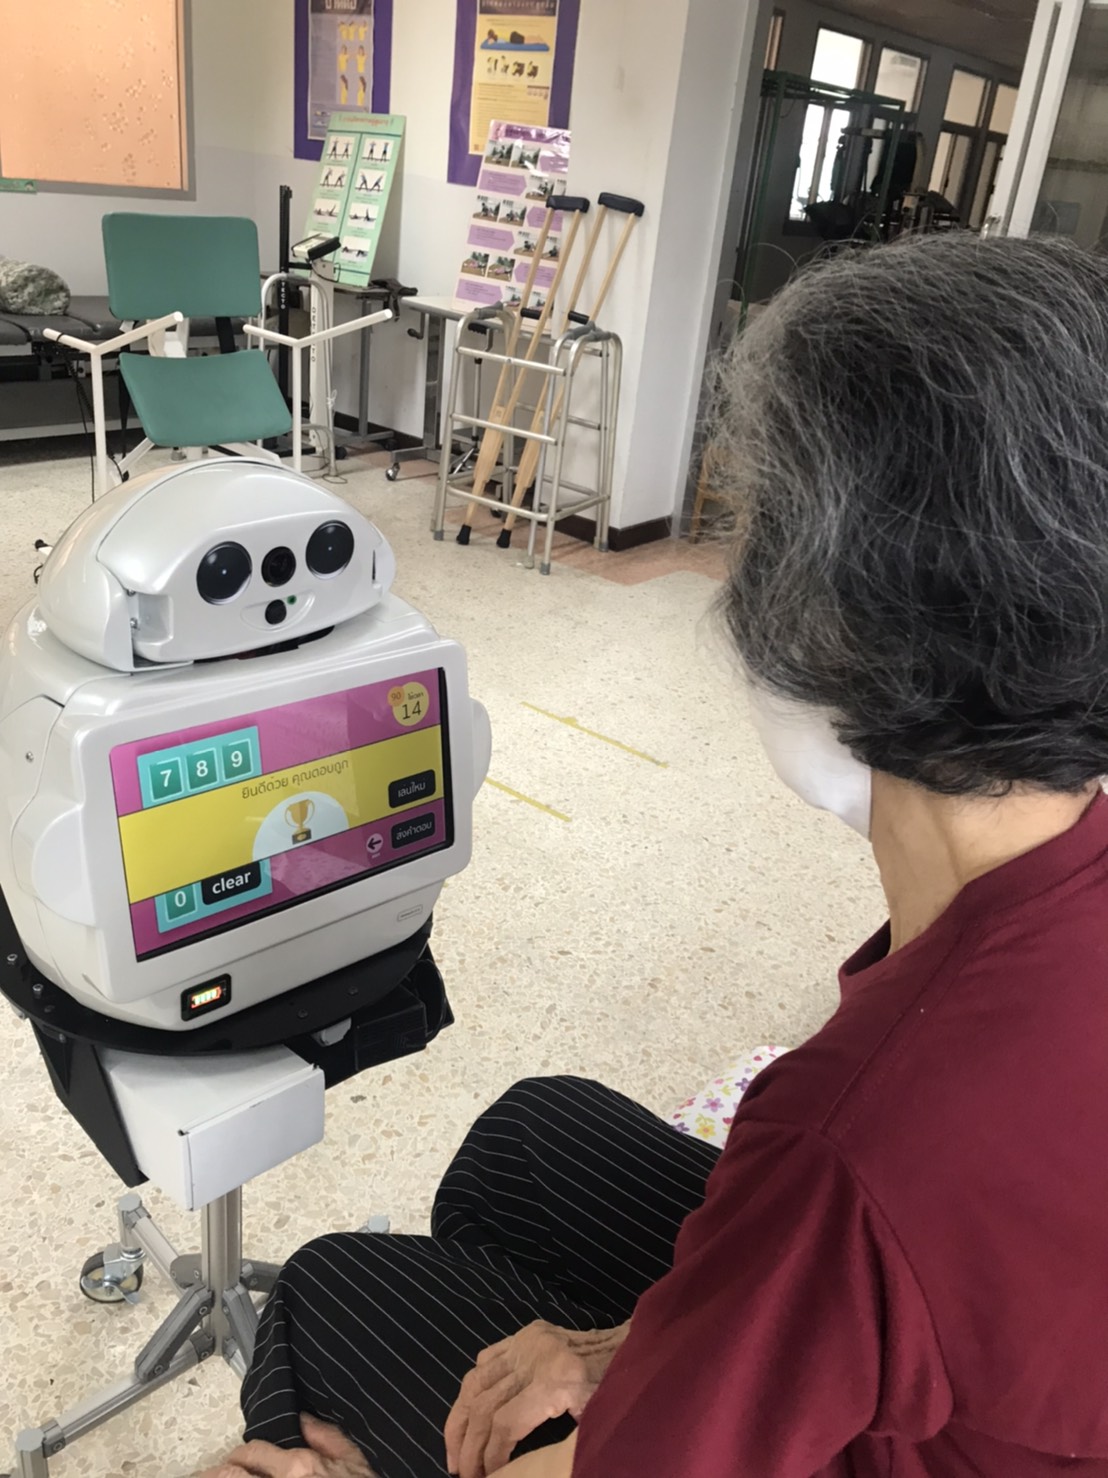 หุ่นยนต์ Desktop Robot มาให้ผู้สูงอายุกลุ่มA